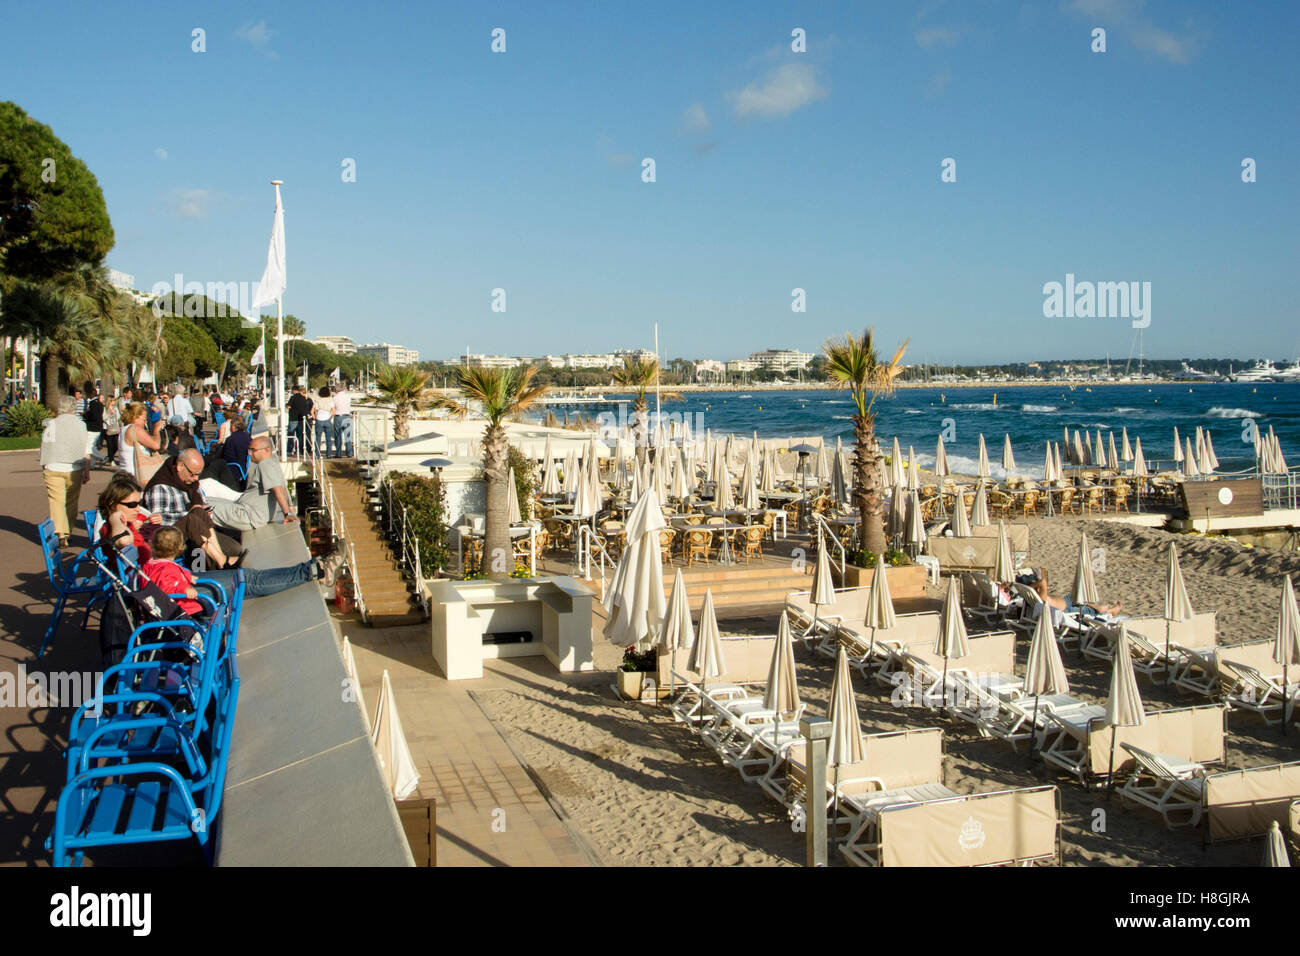 Frankreich, Cote d Azur, Cannes, Flaniermeile Boulevard de la Croisette und Stadtstrand Stock Photo